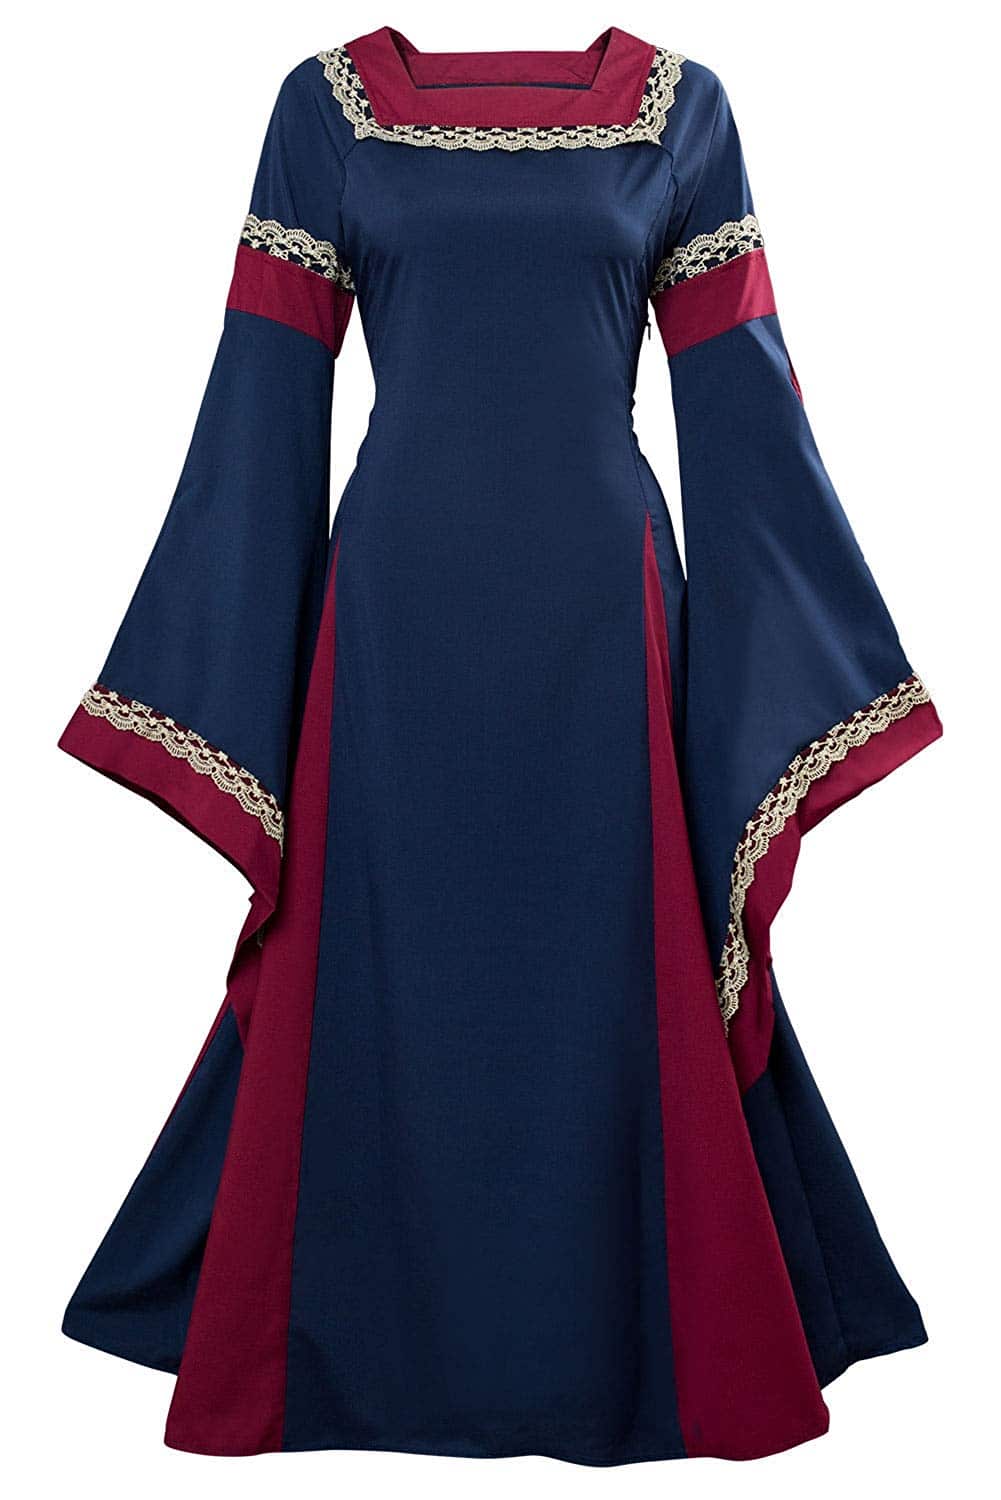 Disfraz Vestido Medieval Renacimiento para Mujer Vestido Largo de Noche de Estilo Victoriano gótico